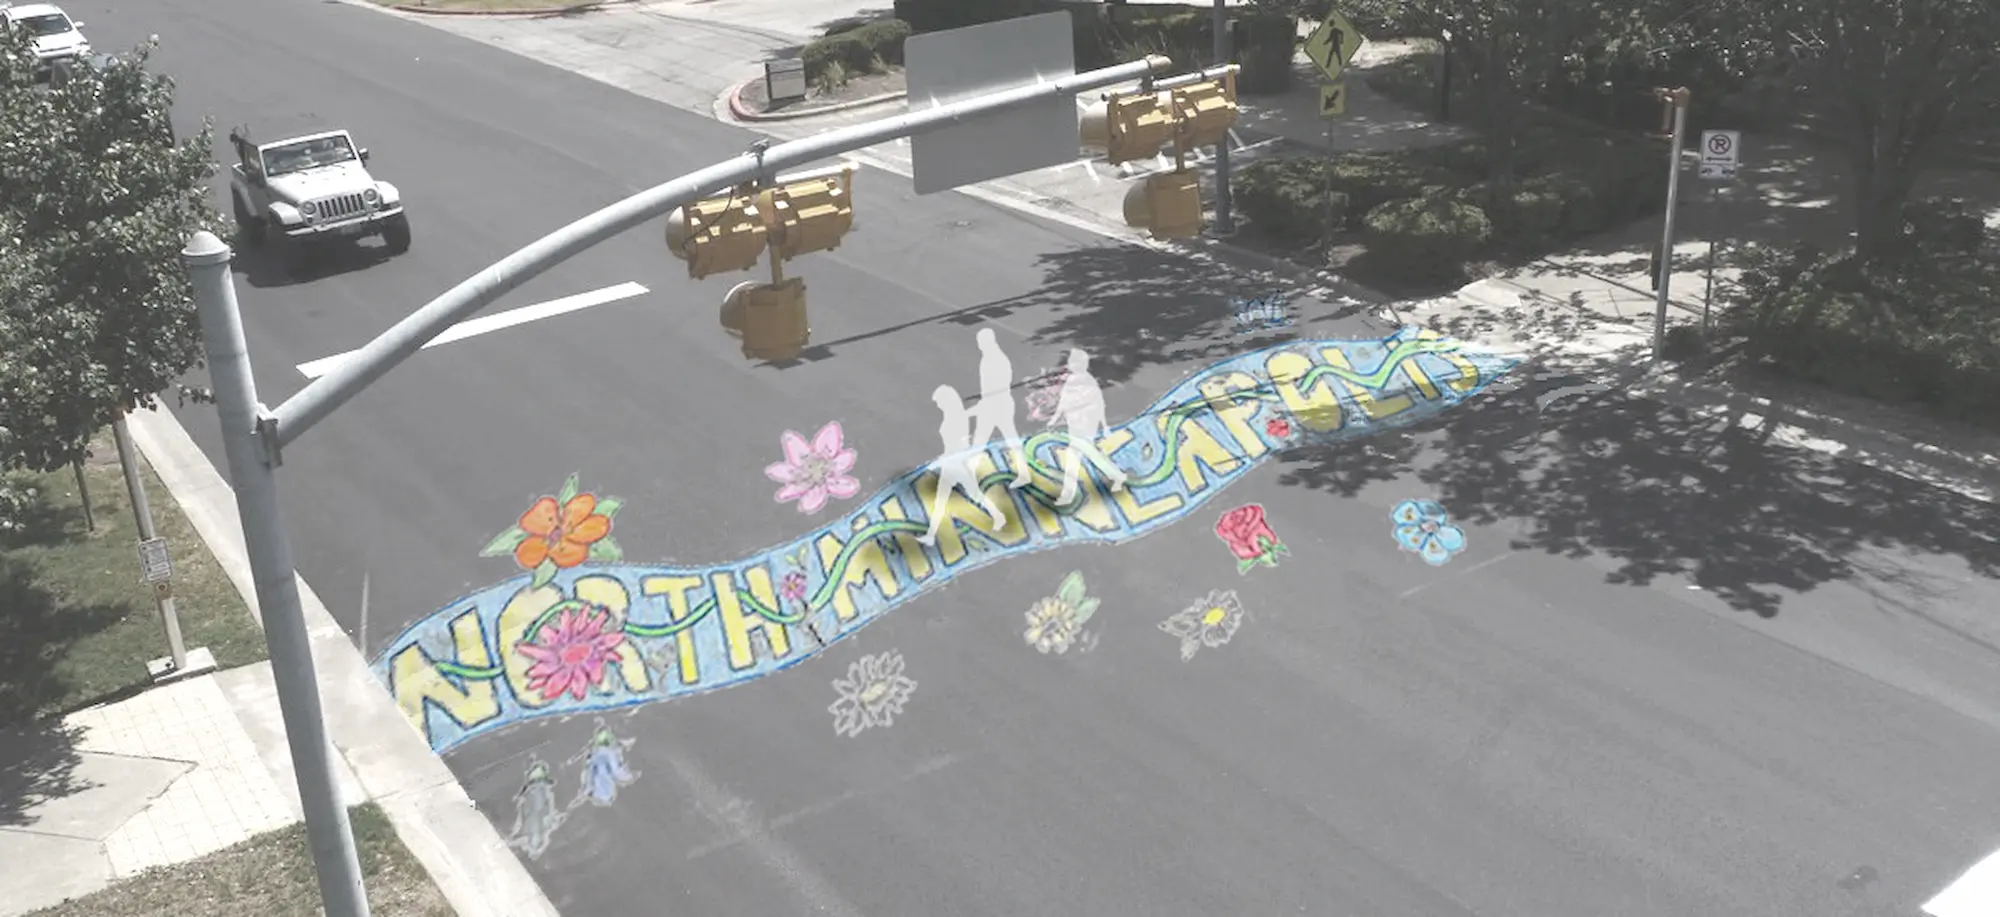 A rendering of an asphalt art crosswalk, designed by Summit Academy Teen Tech Center student Jerianna Camp-Huff